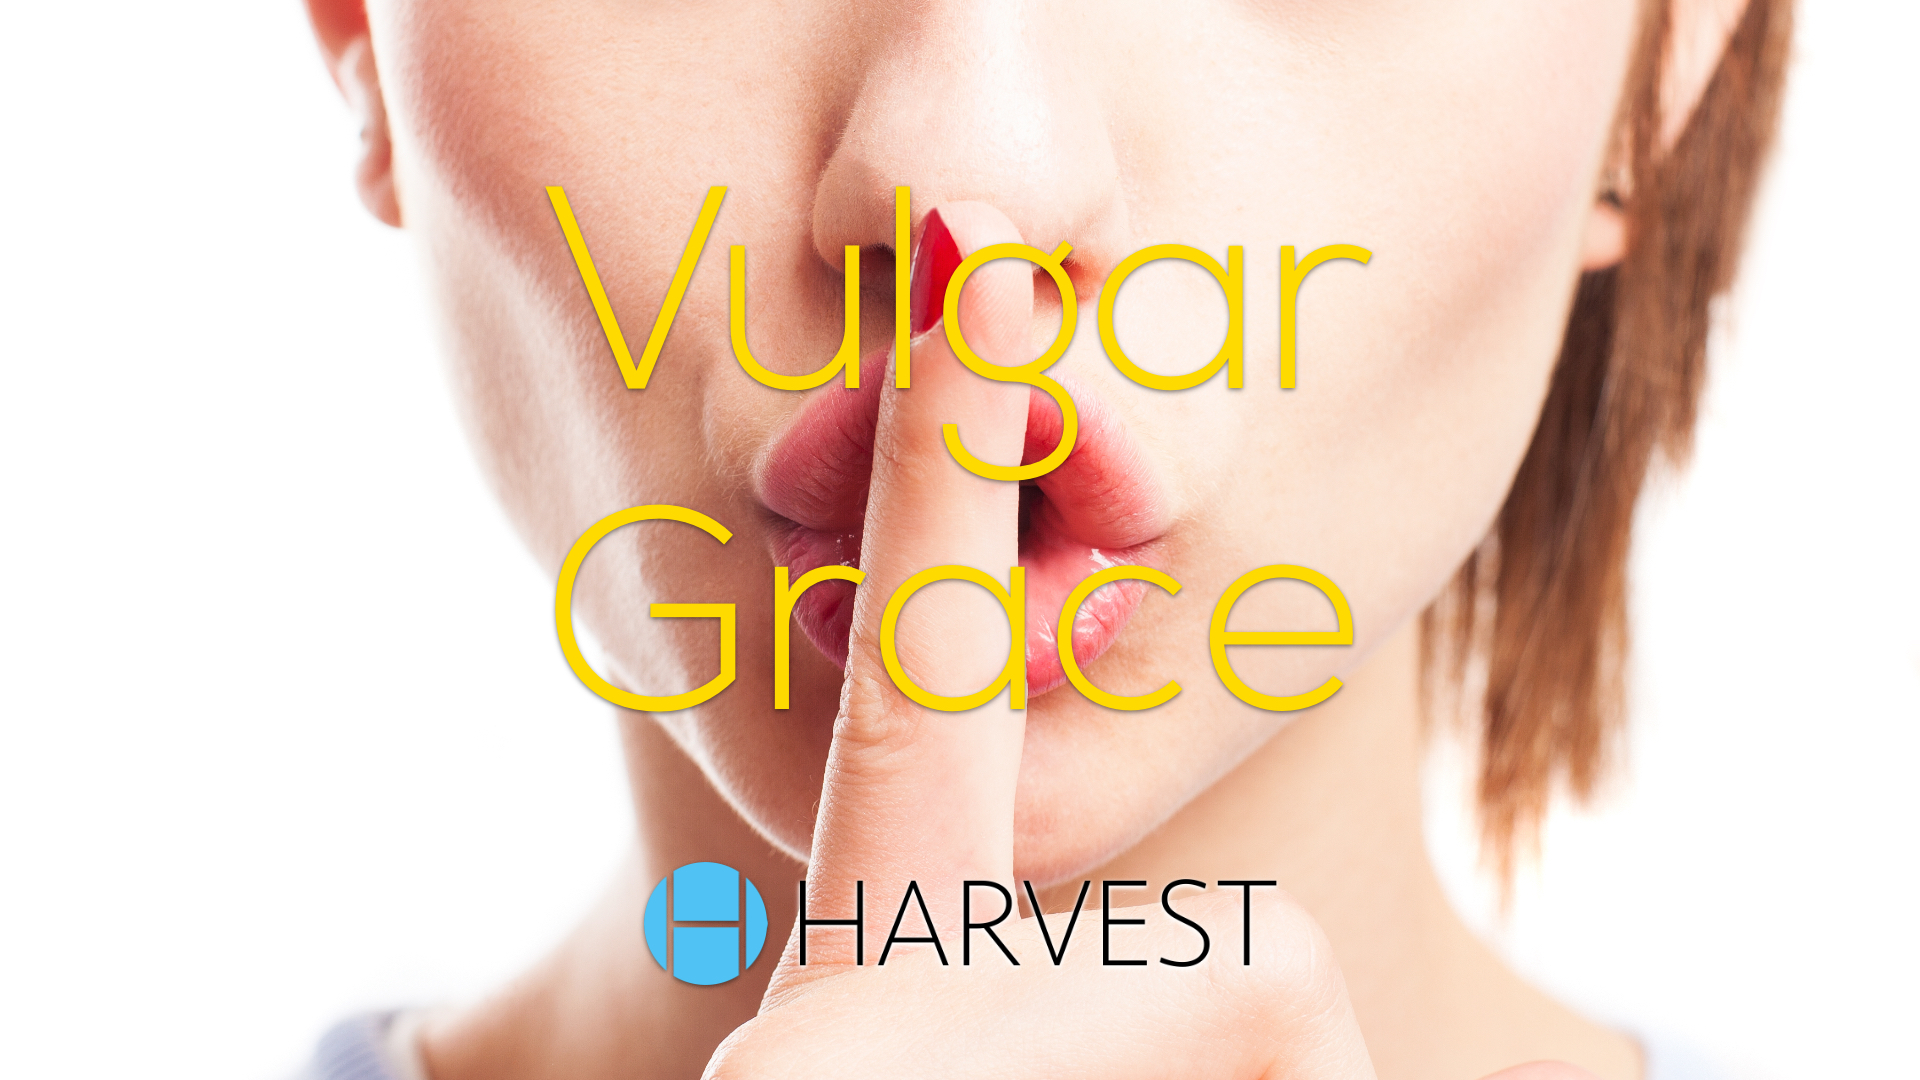 Vulgar Grace